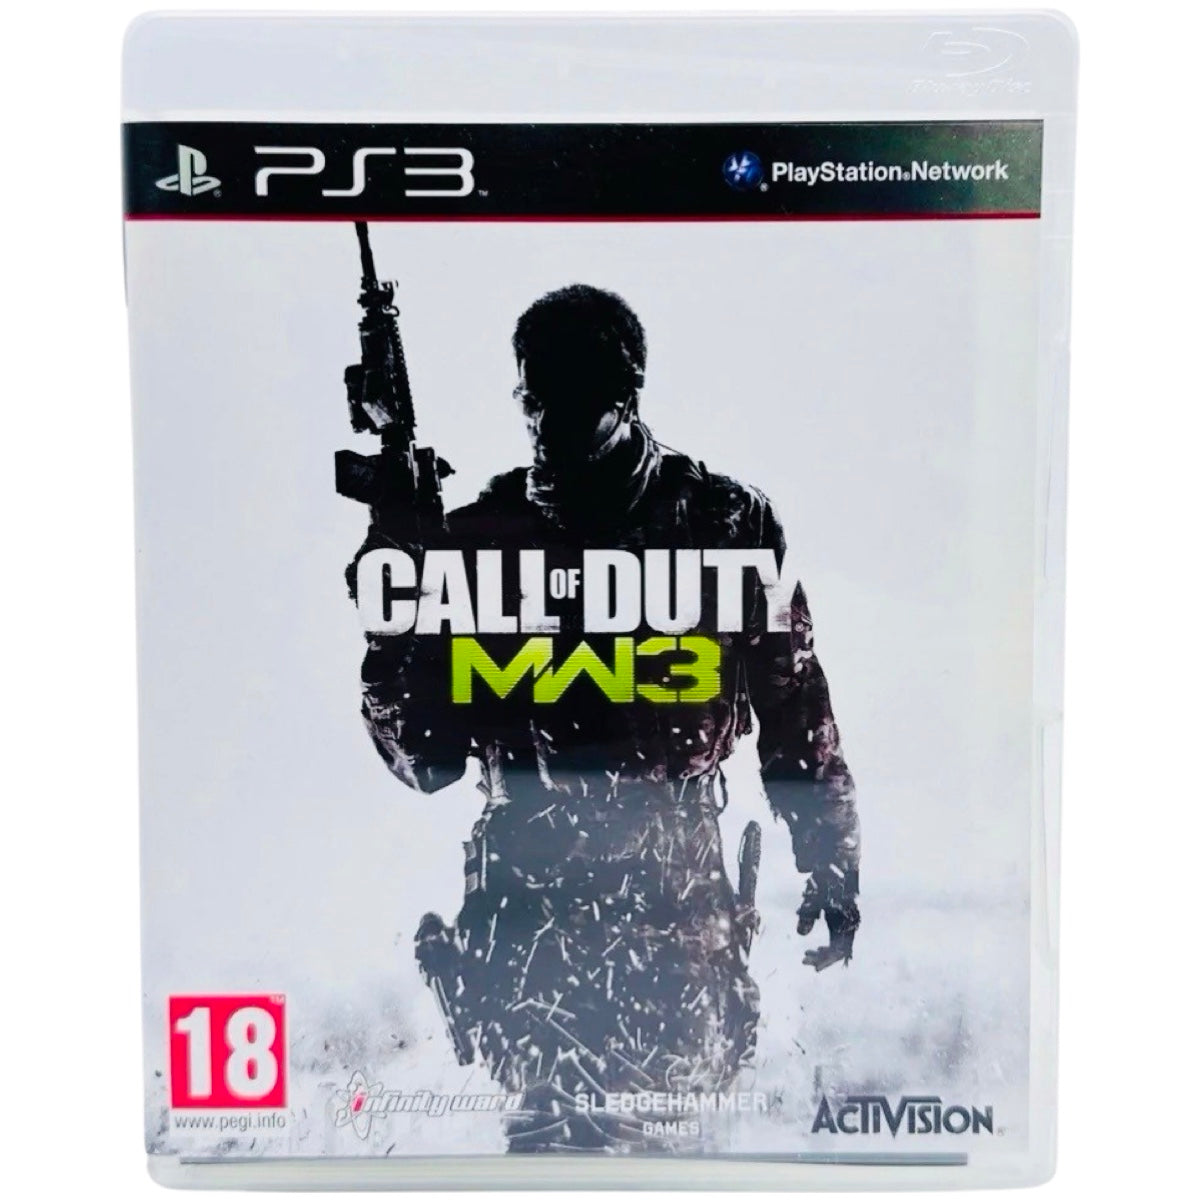 PS3: Call Of Duty Modern Warfare 3